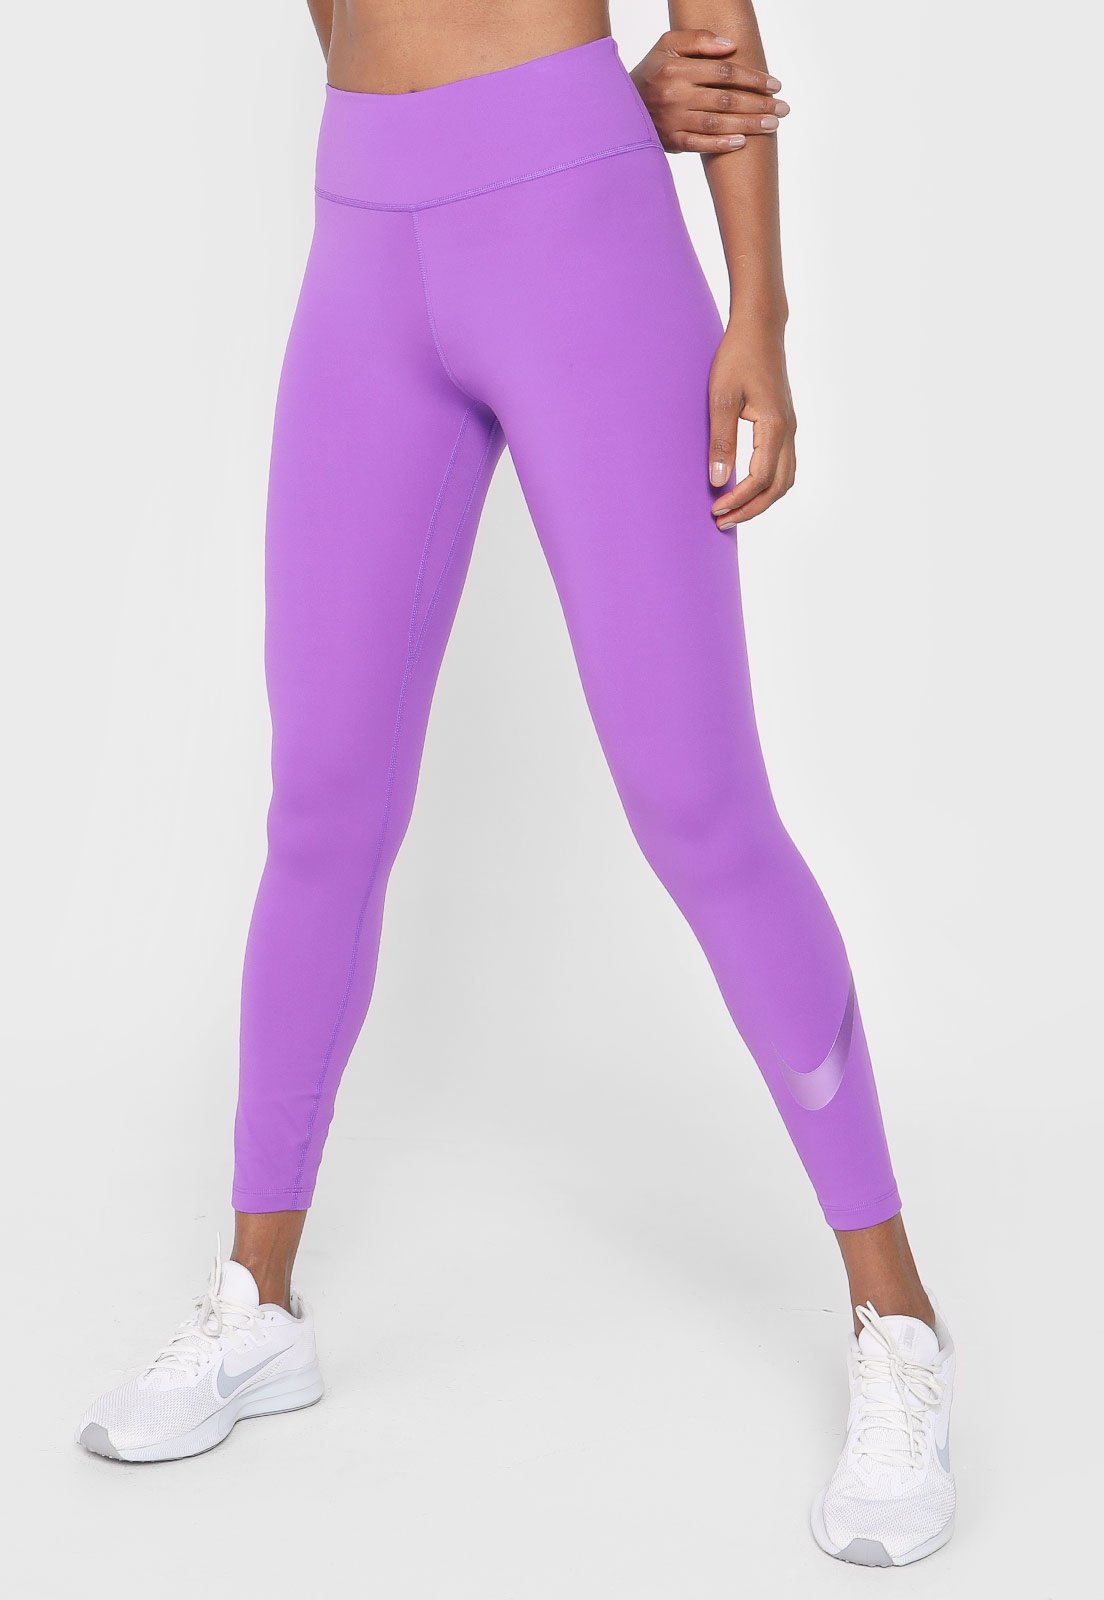 Portinhola Outlet e Esportes - Legging Nike Sportswear Estampada Roxa, com  cós elástico, estampa abstrata em rosa e preto com fundo roxo e modelagem  ajustada. #portinholaoutlet #nike #leggings #movimentoportinhola  #qualidadedevida #suldeminas